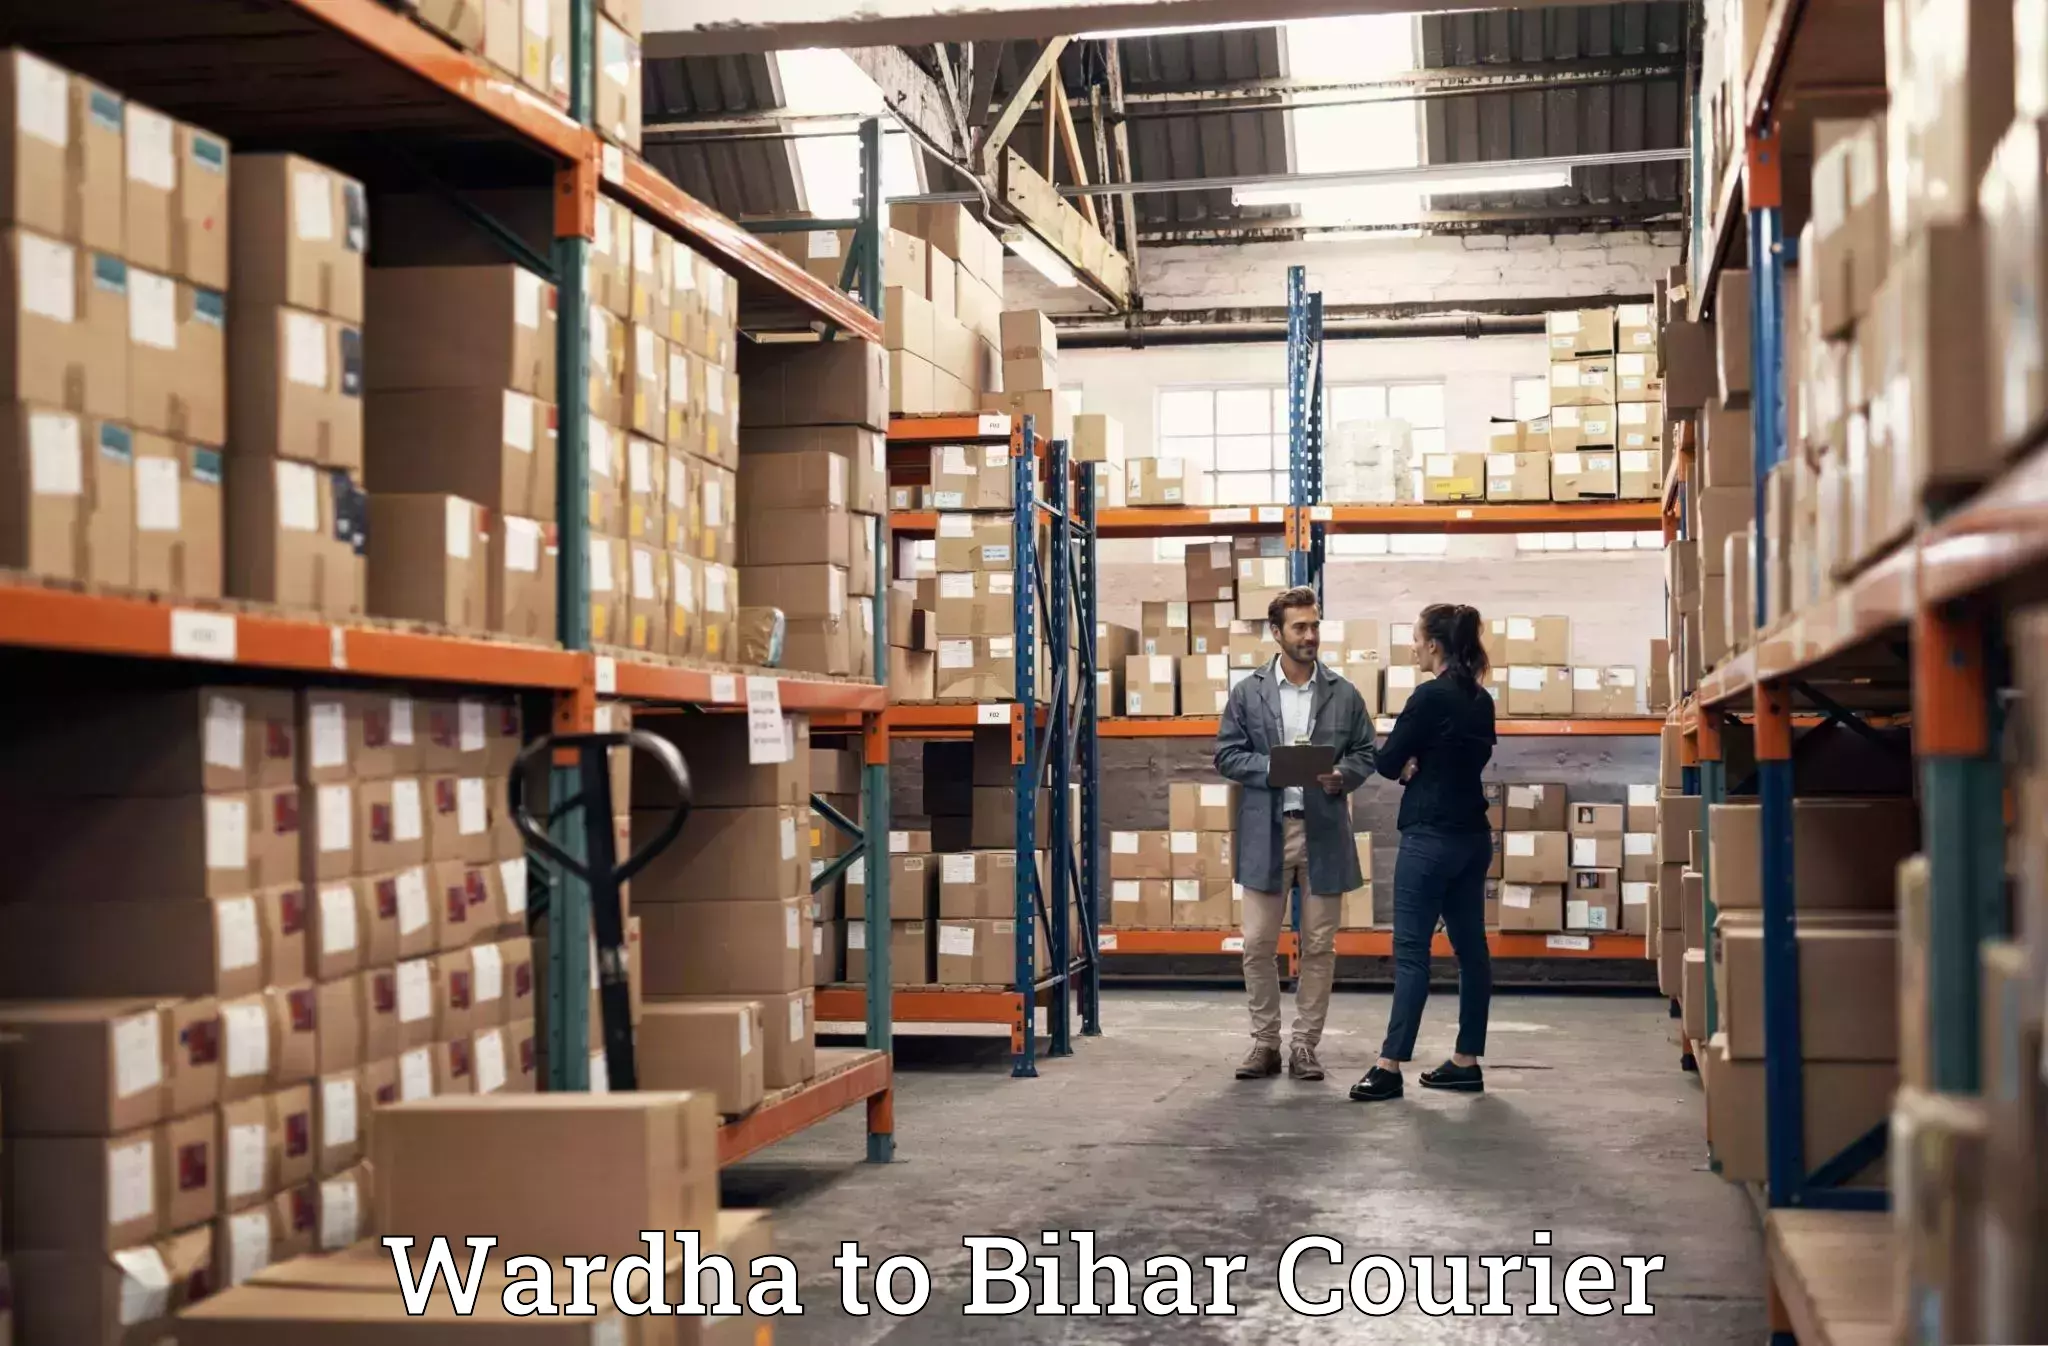 Luggage shipping estimate in Wardha to Piro